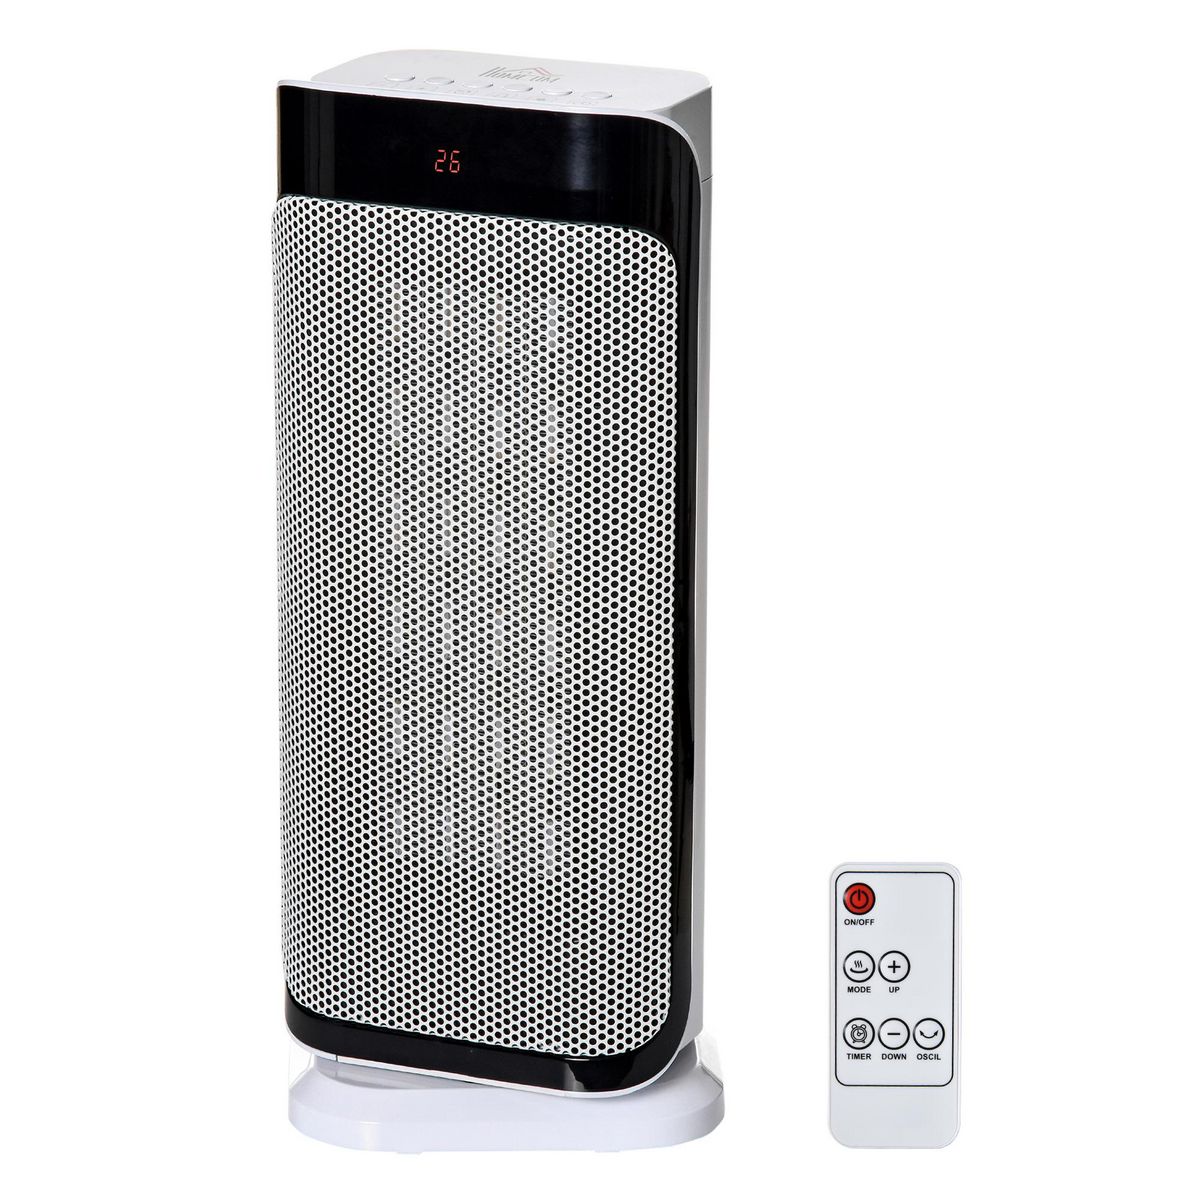  Chauffage d'appoint électrique colonne avec télécommande et timer - chauffage soufflant 1000-2000W - panneau LED - plastique noir blanc